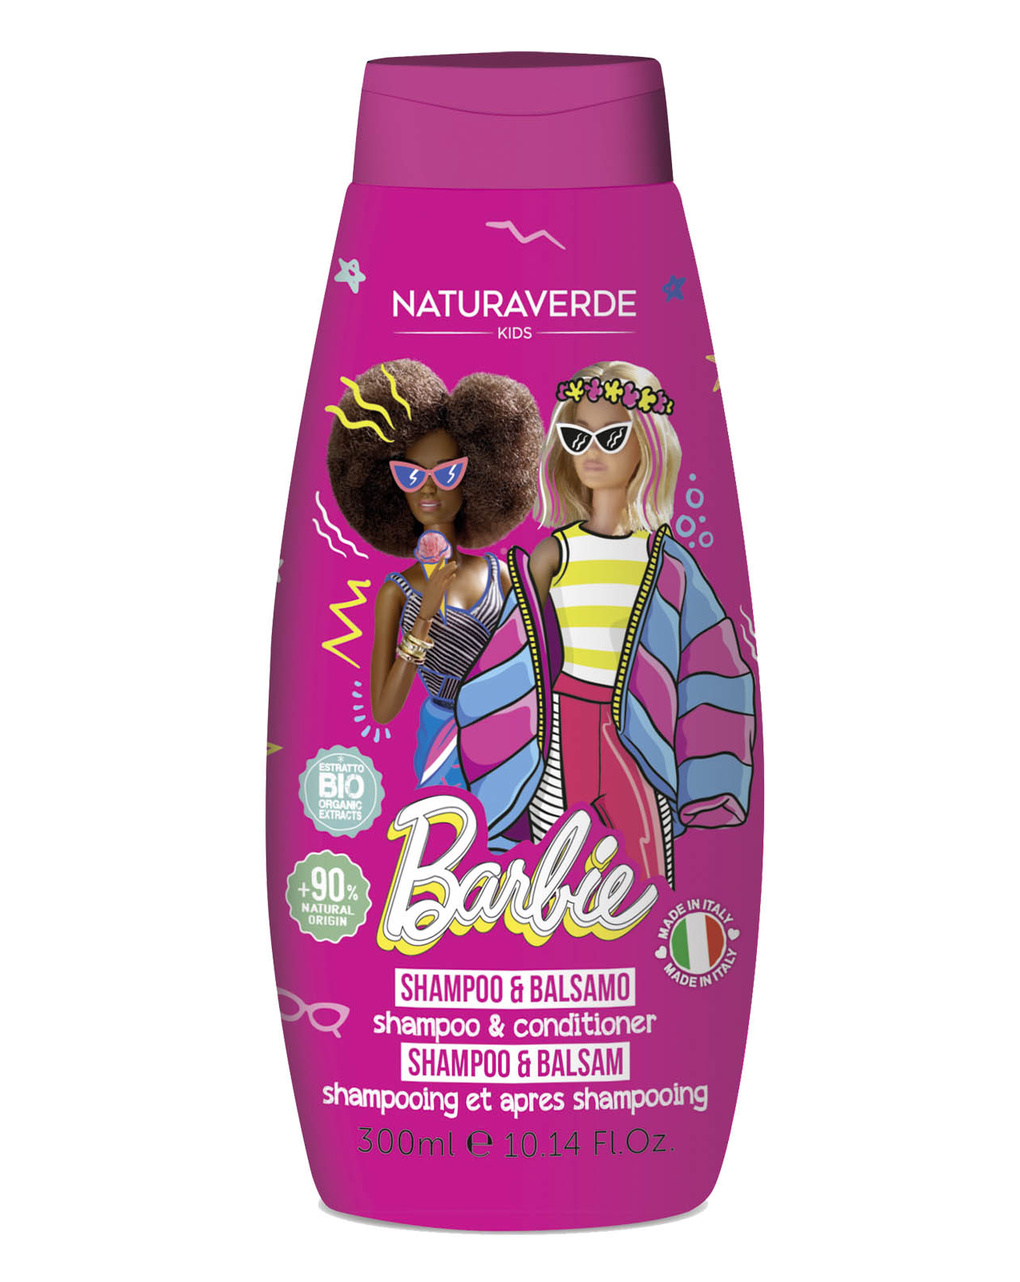 Shampoo&balsamo barbie 300 ml - naturaverde